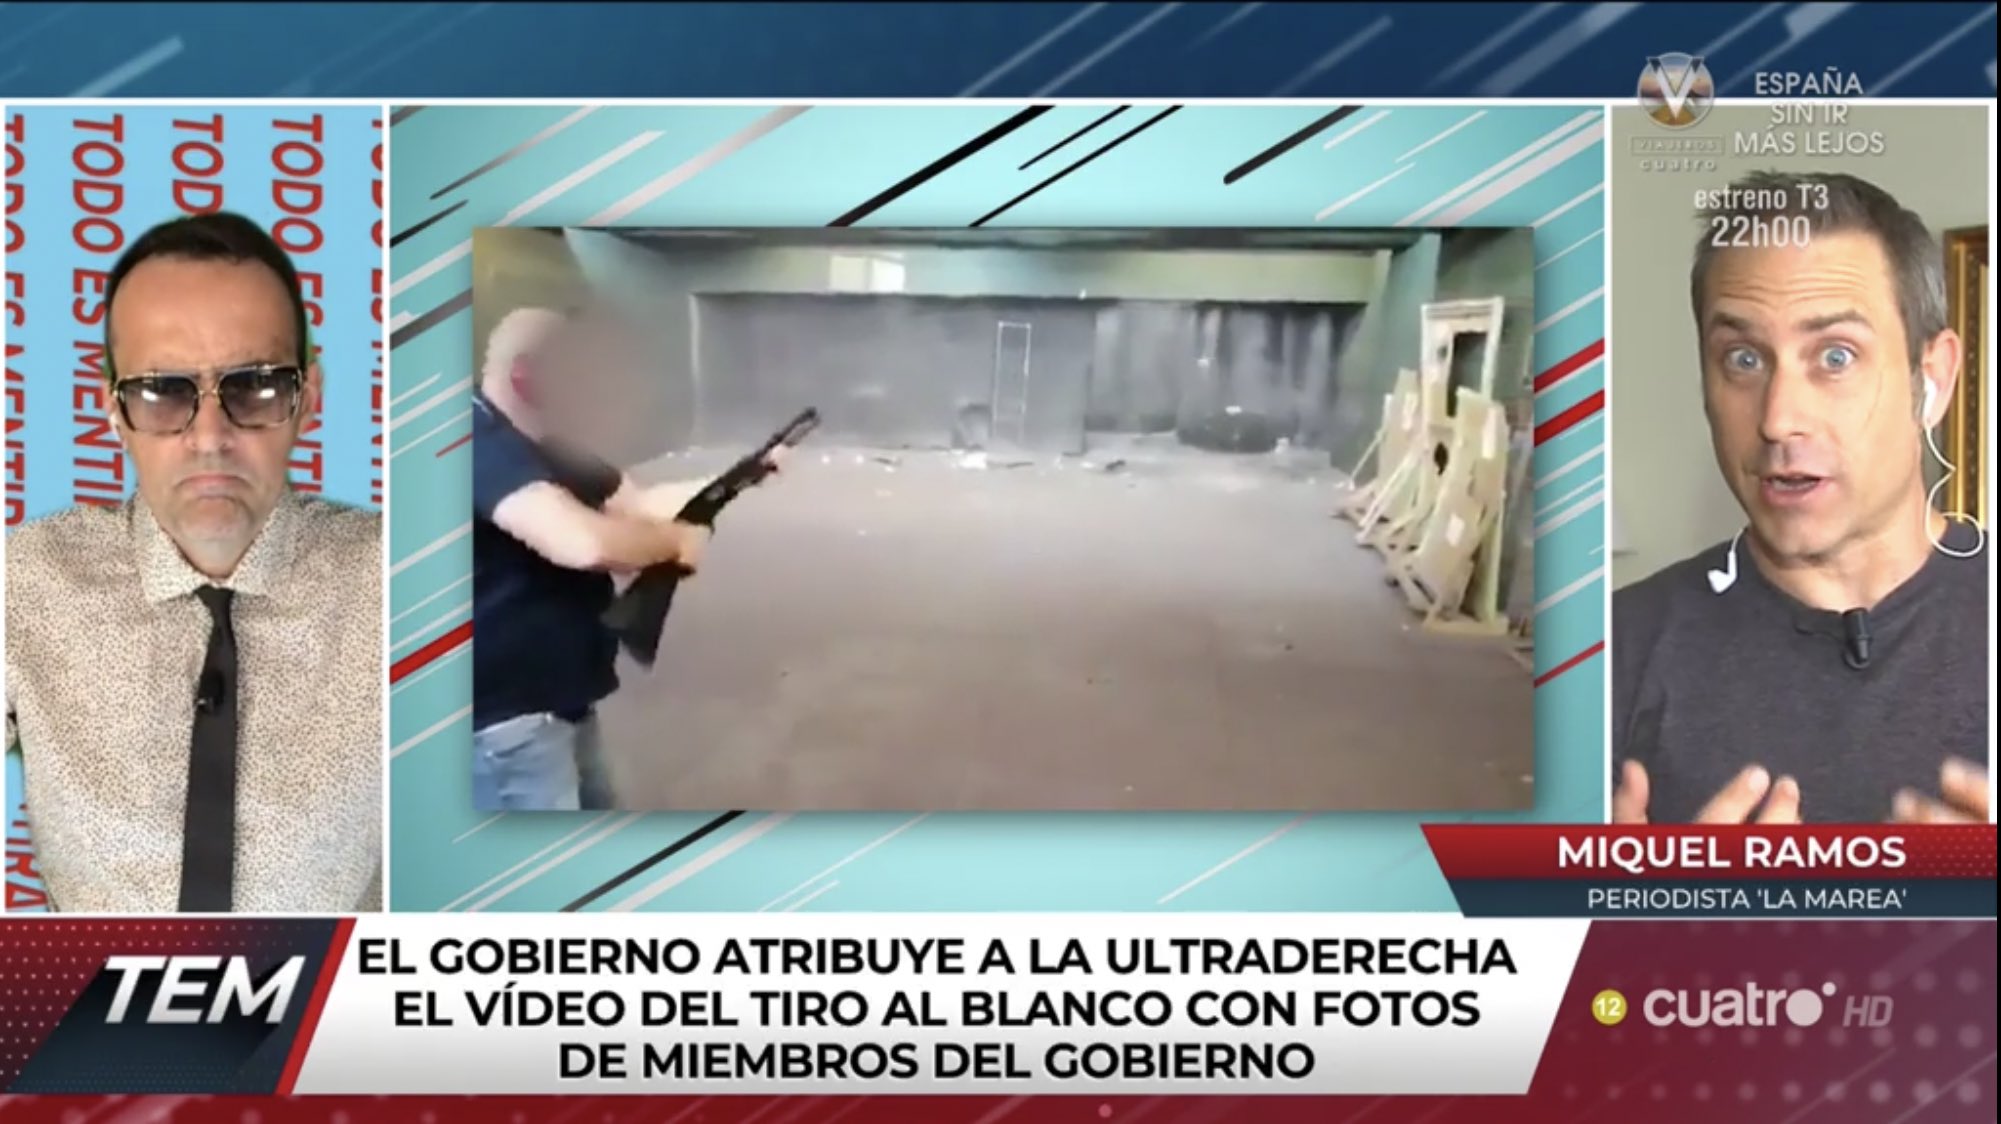 Todo Es Mentira в Twitter: "Hablamos con @Miquel_R, periodista de  @lamarea_com que publicó el vídeo del tiro al blanco.  https://t.co/mSrxSSLDvN #TodoEsMentira19J… https://t.co/oHA0VEqdVT"